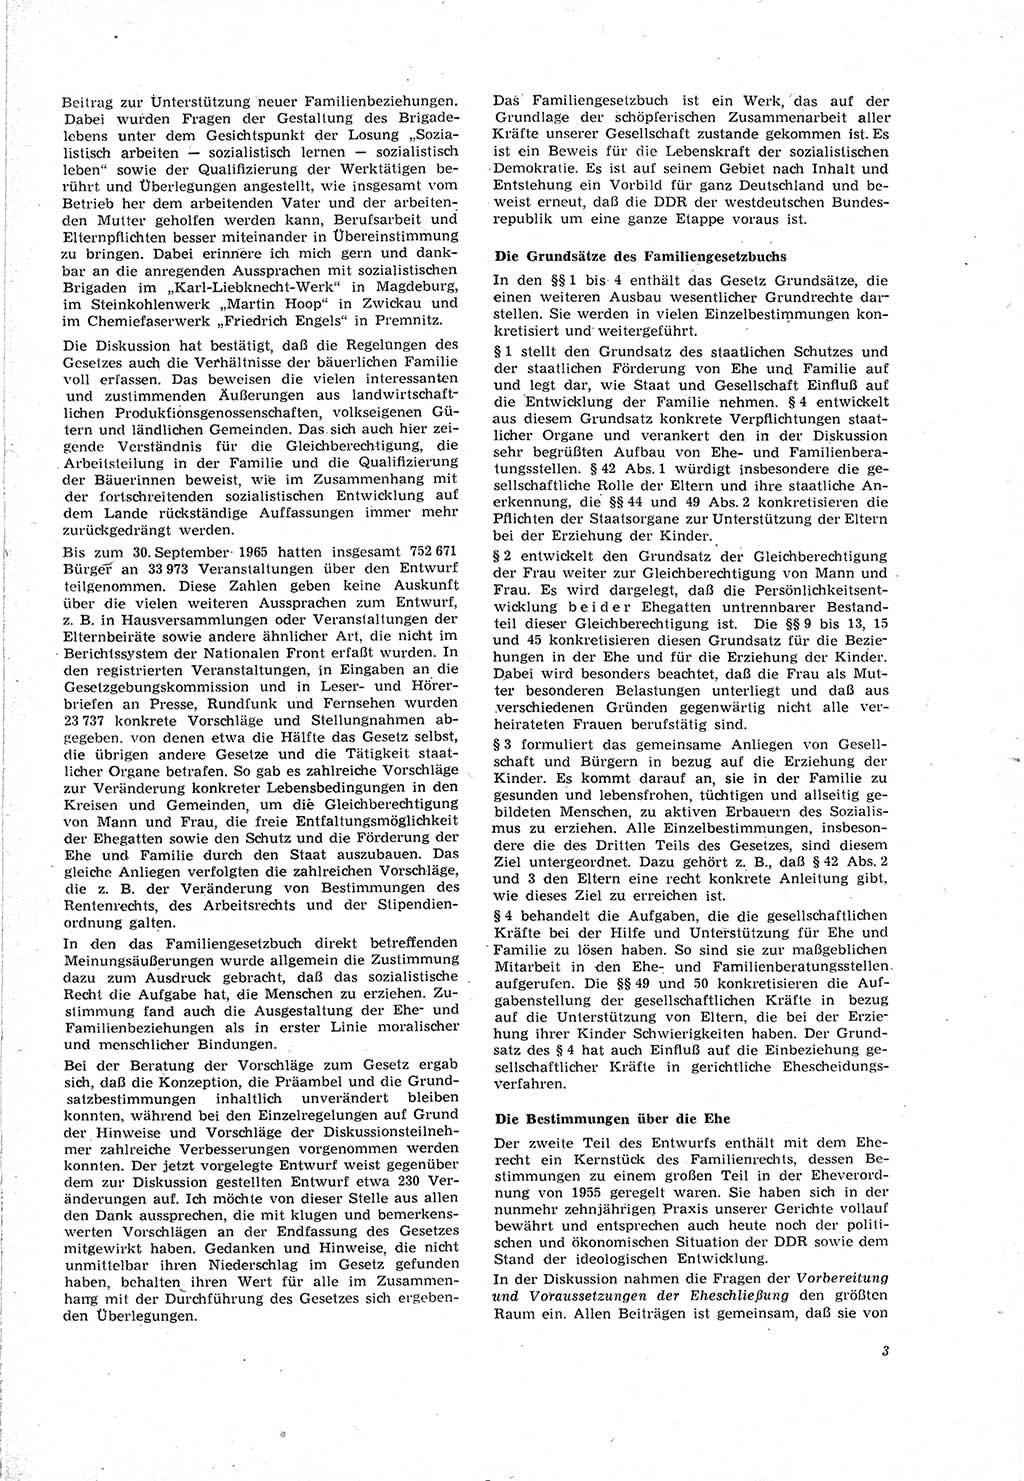 Neue Justiz (NJ), Zeitschrift für Recht und Rechtswissenschaft [Deutsche Demokratische Republik (DDR)], 20. Jahrgang 1966, Seite 3 (NJ DDR 1966, S. 3)